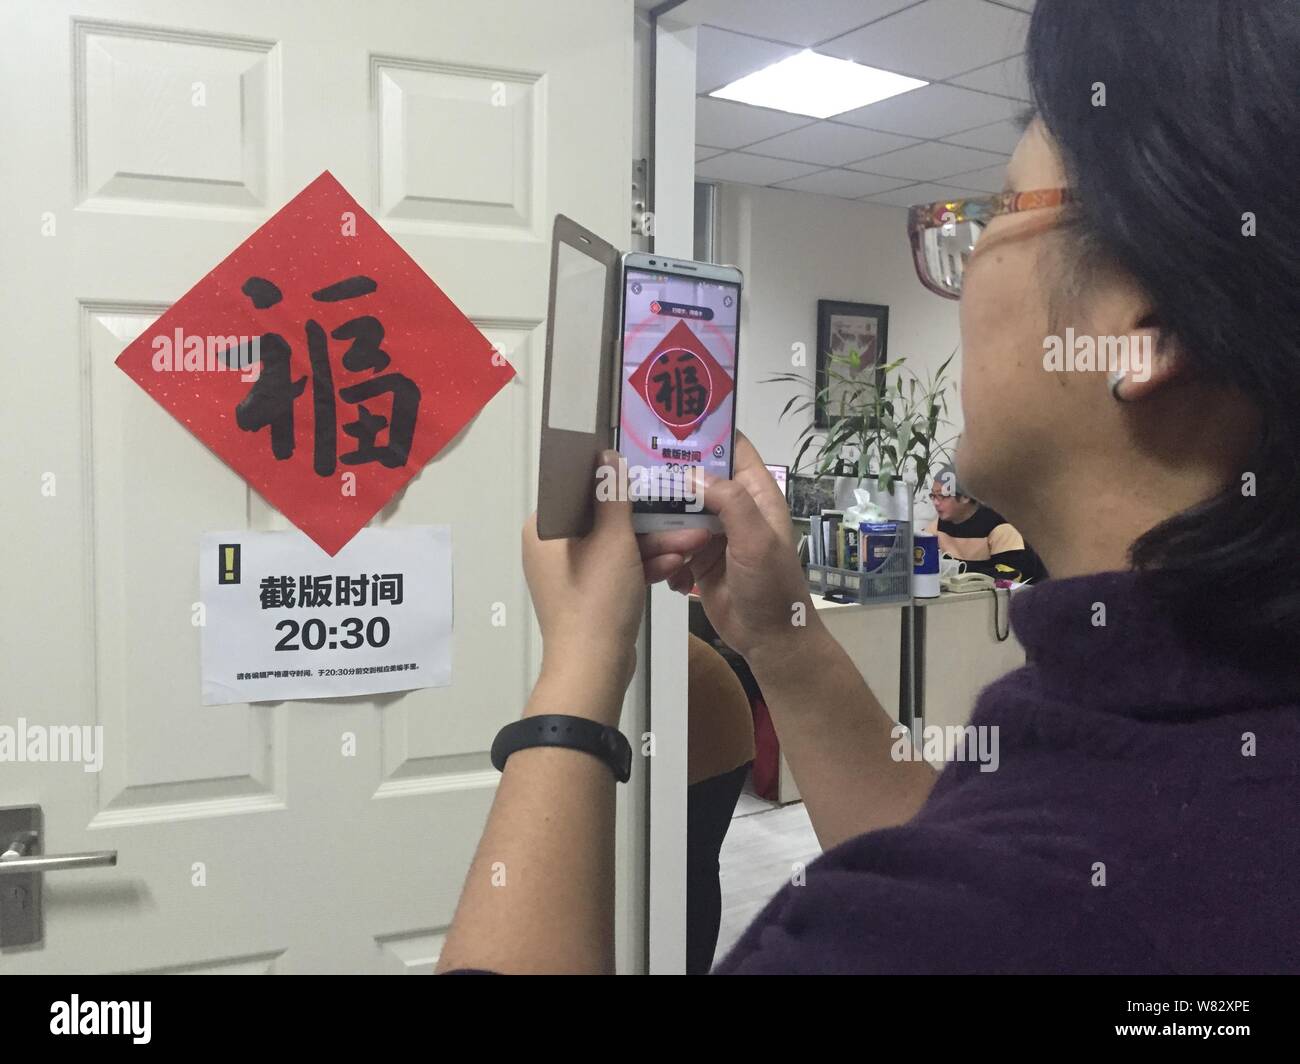 Una mujer china utiliza su smartphone para escanear el carácter chino "Fu", que significa "Suerte" en inglés, para reproducir un Pokemon Go-inspirado gam de realidad aumentada Foto de stock